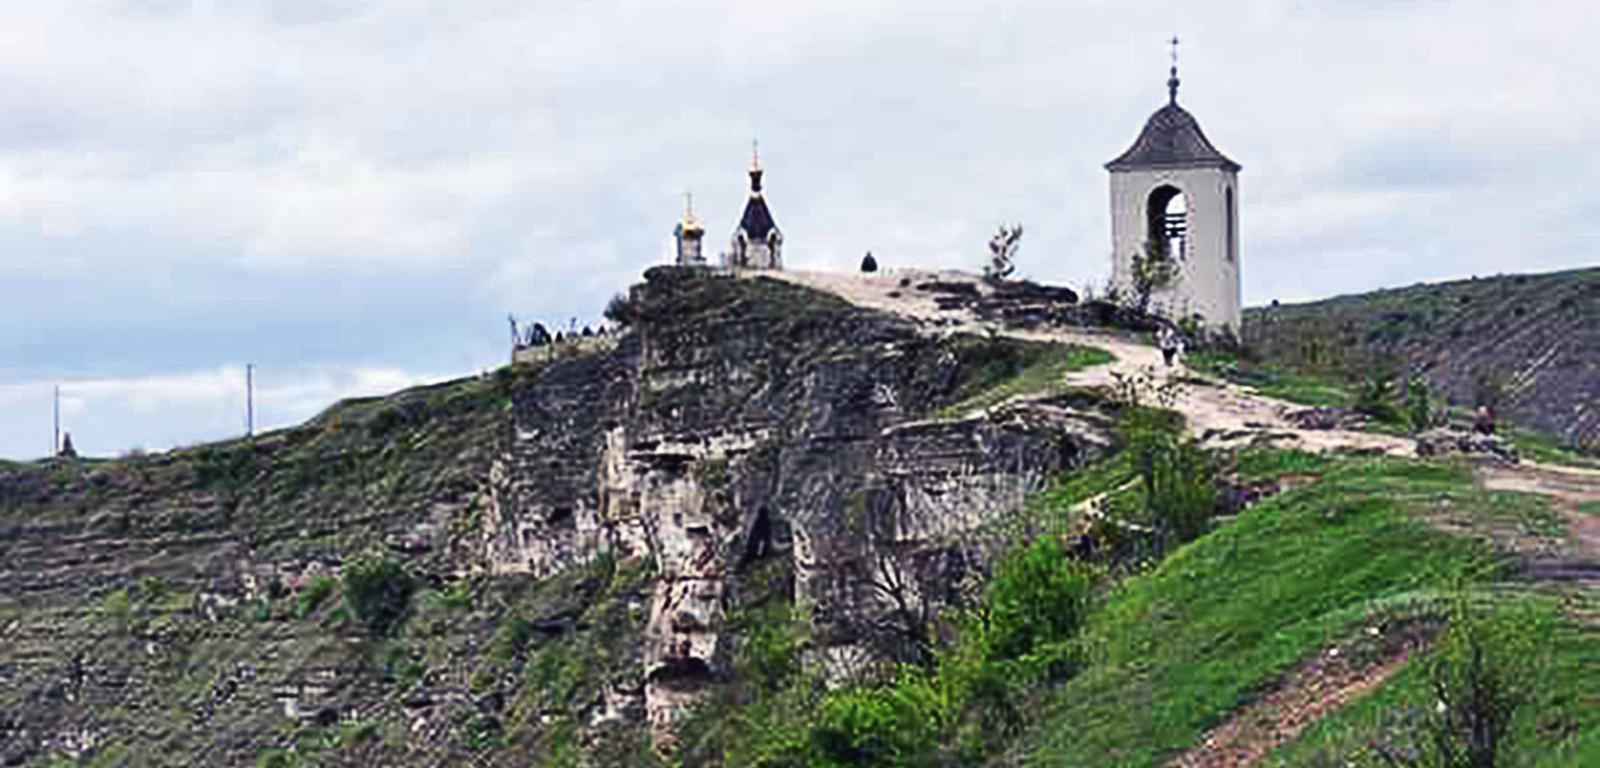 Skalna cerkiew Peştere w Mołdawii widoczna jest dopiero z drugiego brzegu rzeki.